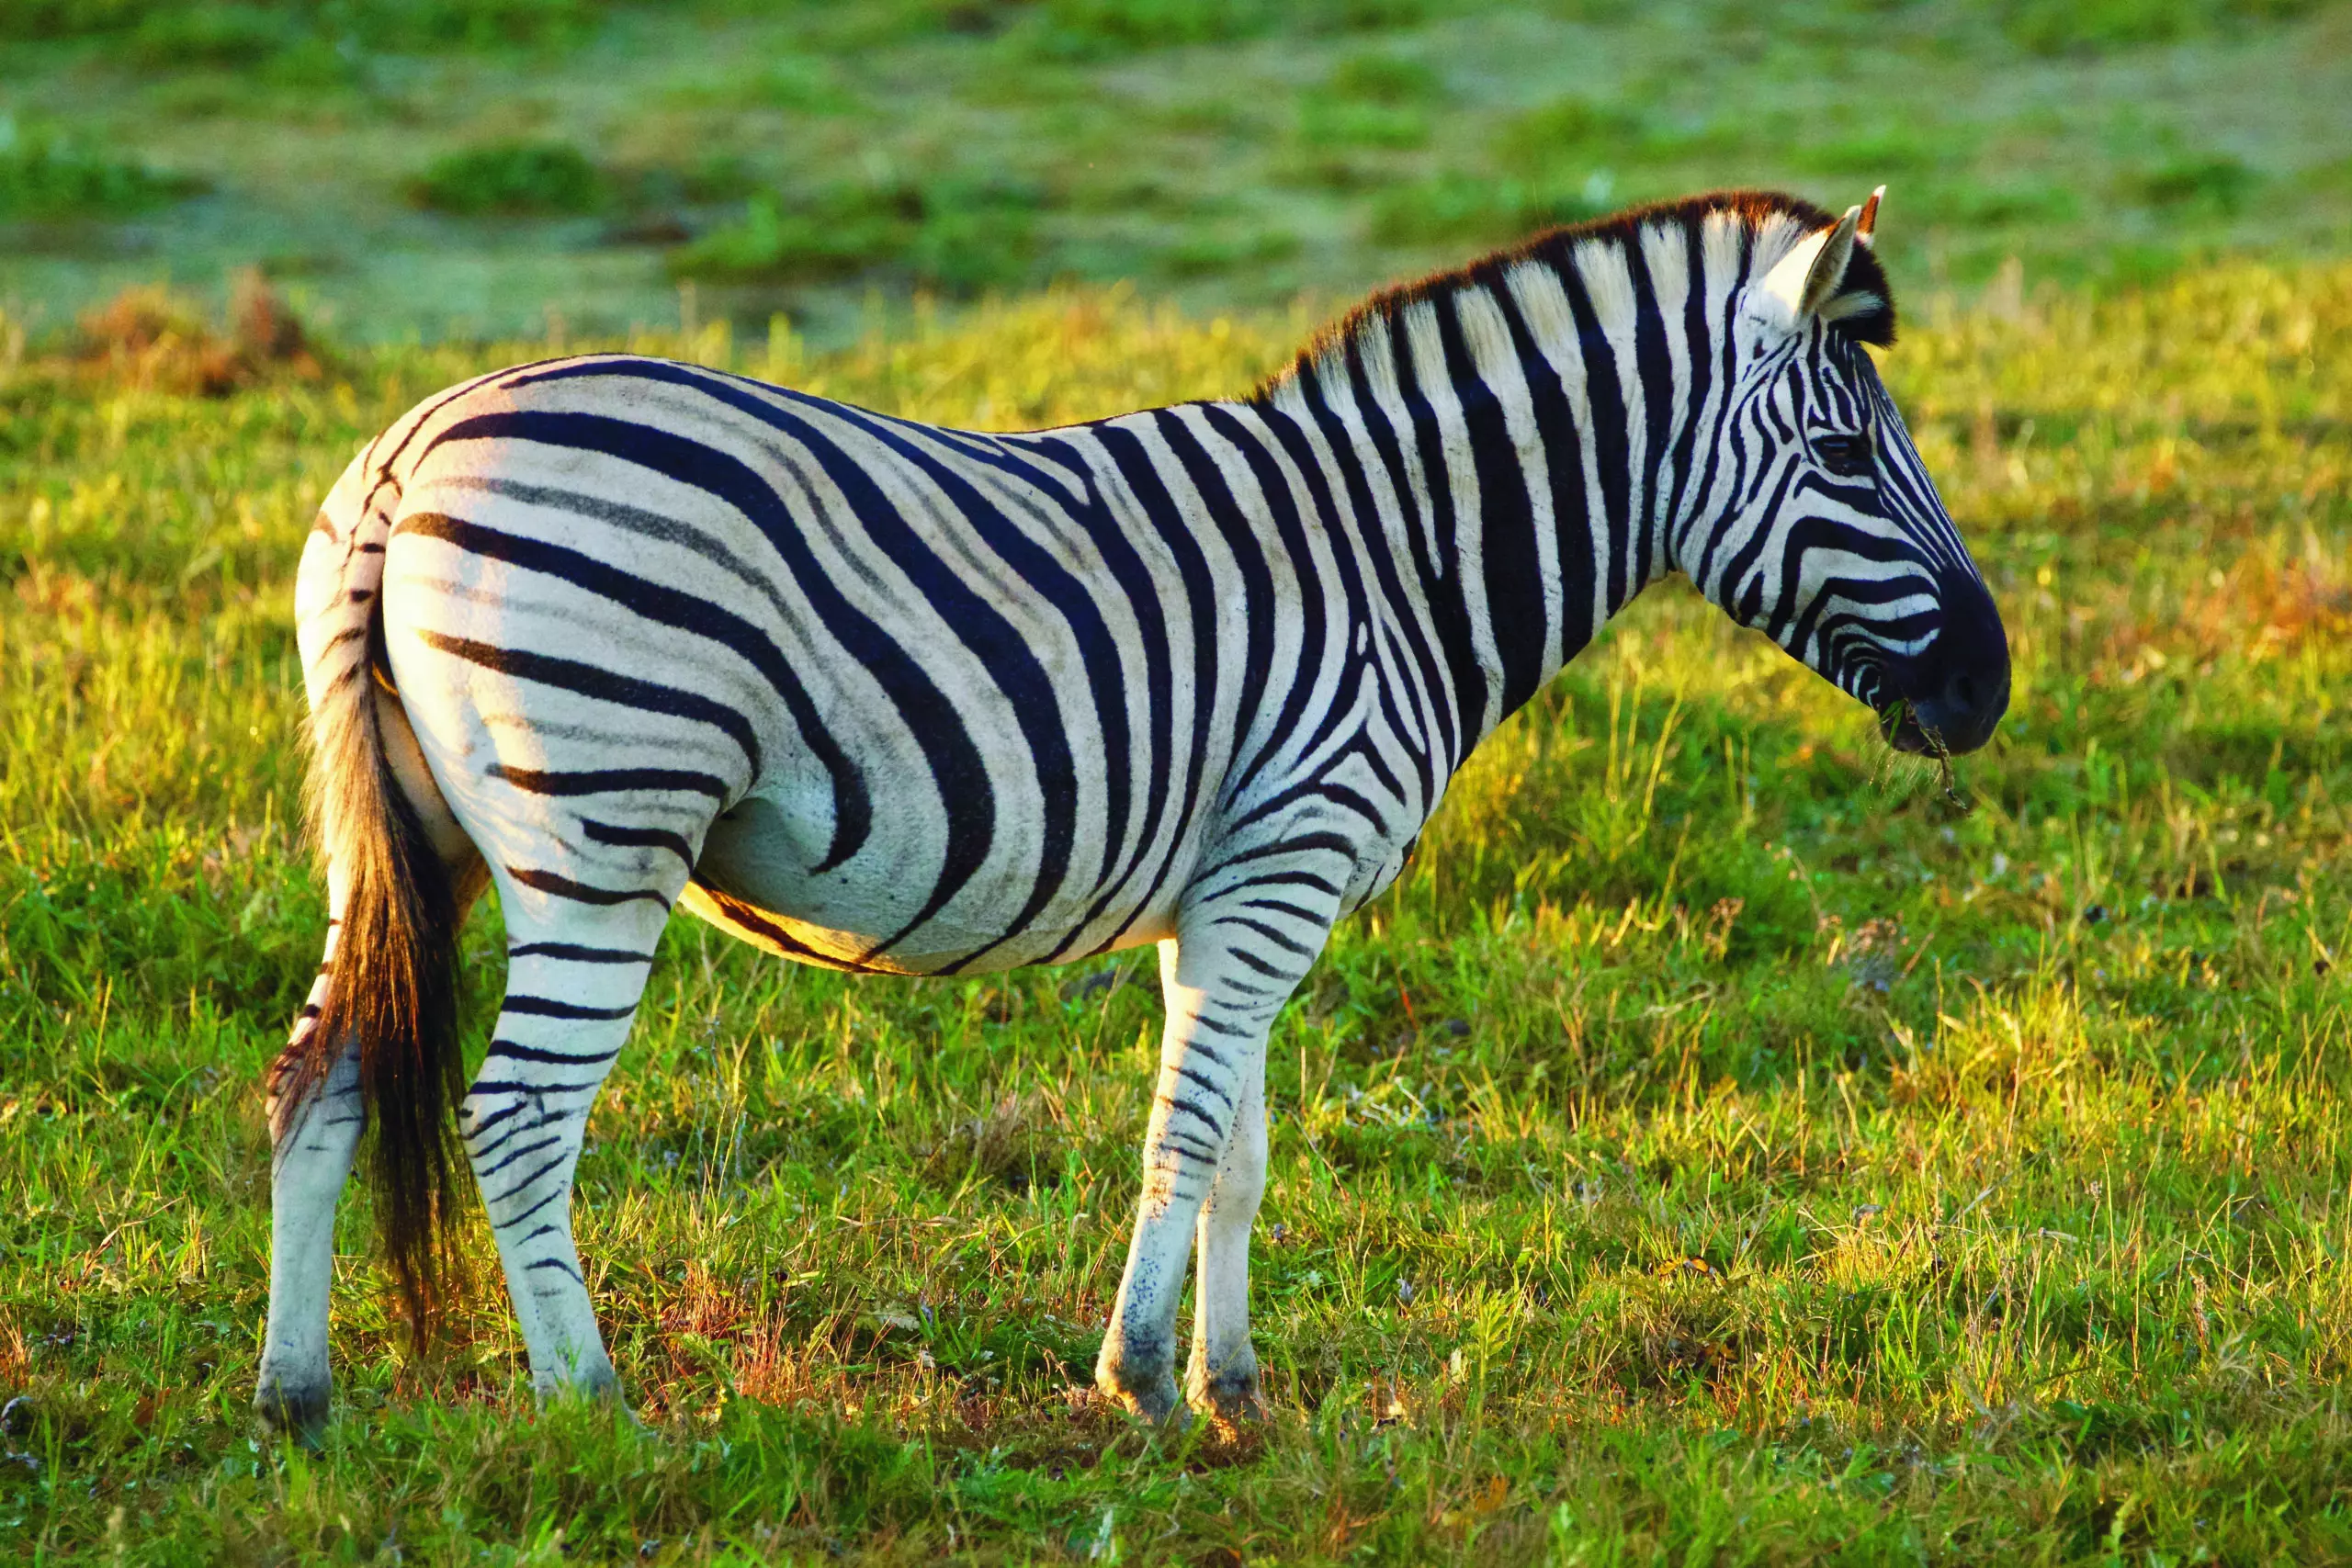 Wandbild (3464) Zebra 4 präsentiert: Tiere,Wildtiere,Aus Afrika